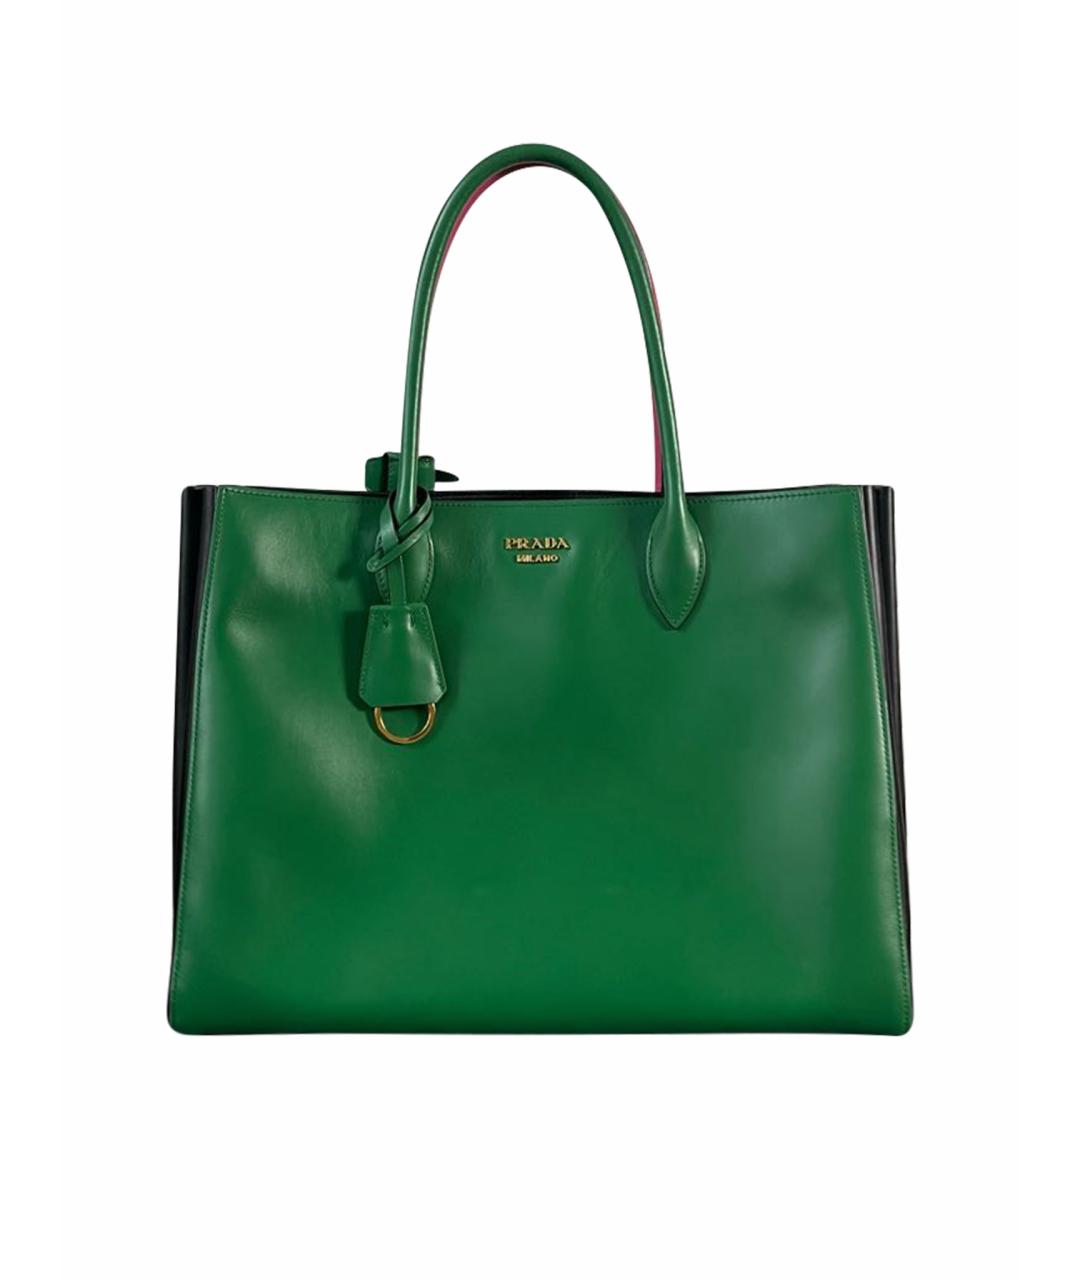 PRADA Зеленая кожаная сумка с короткими ручками, фото 1